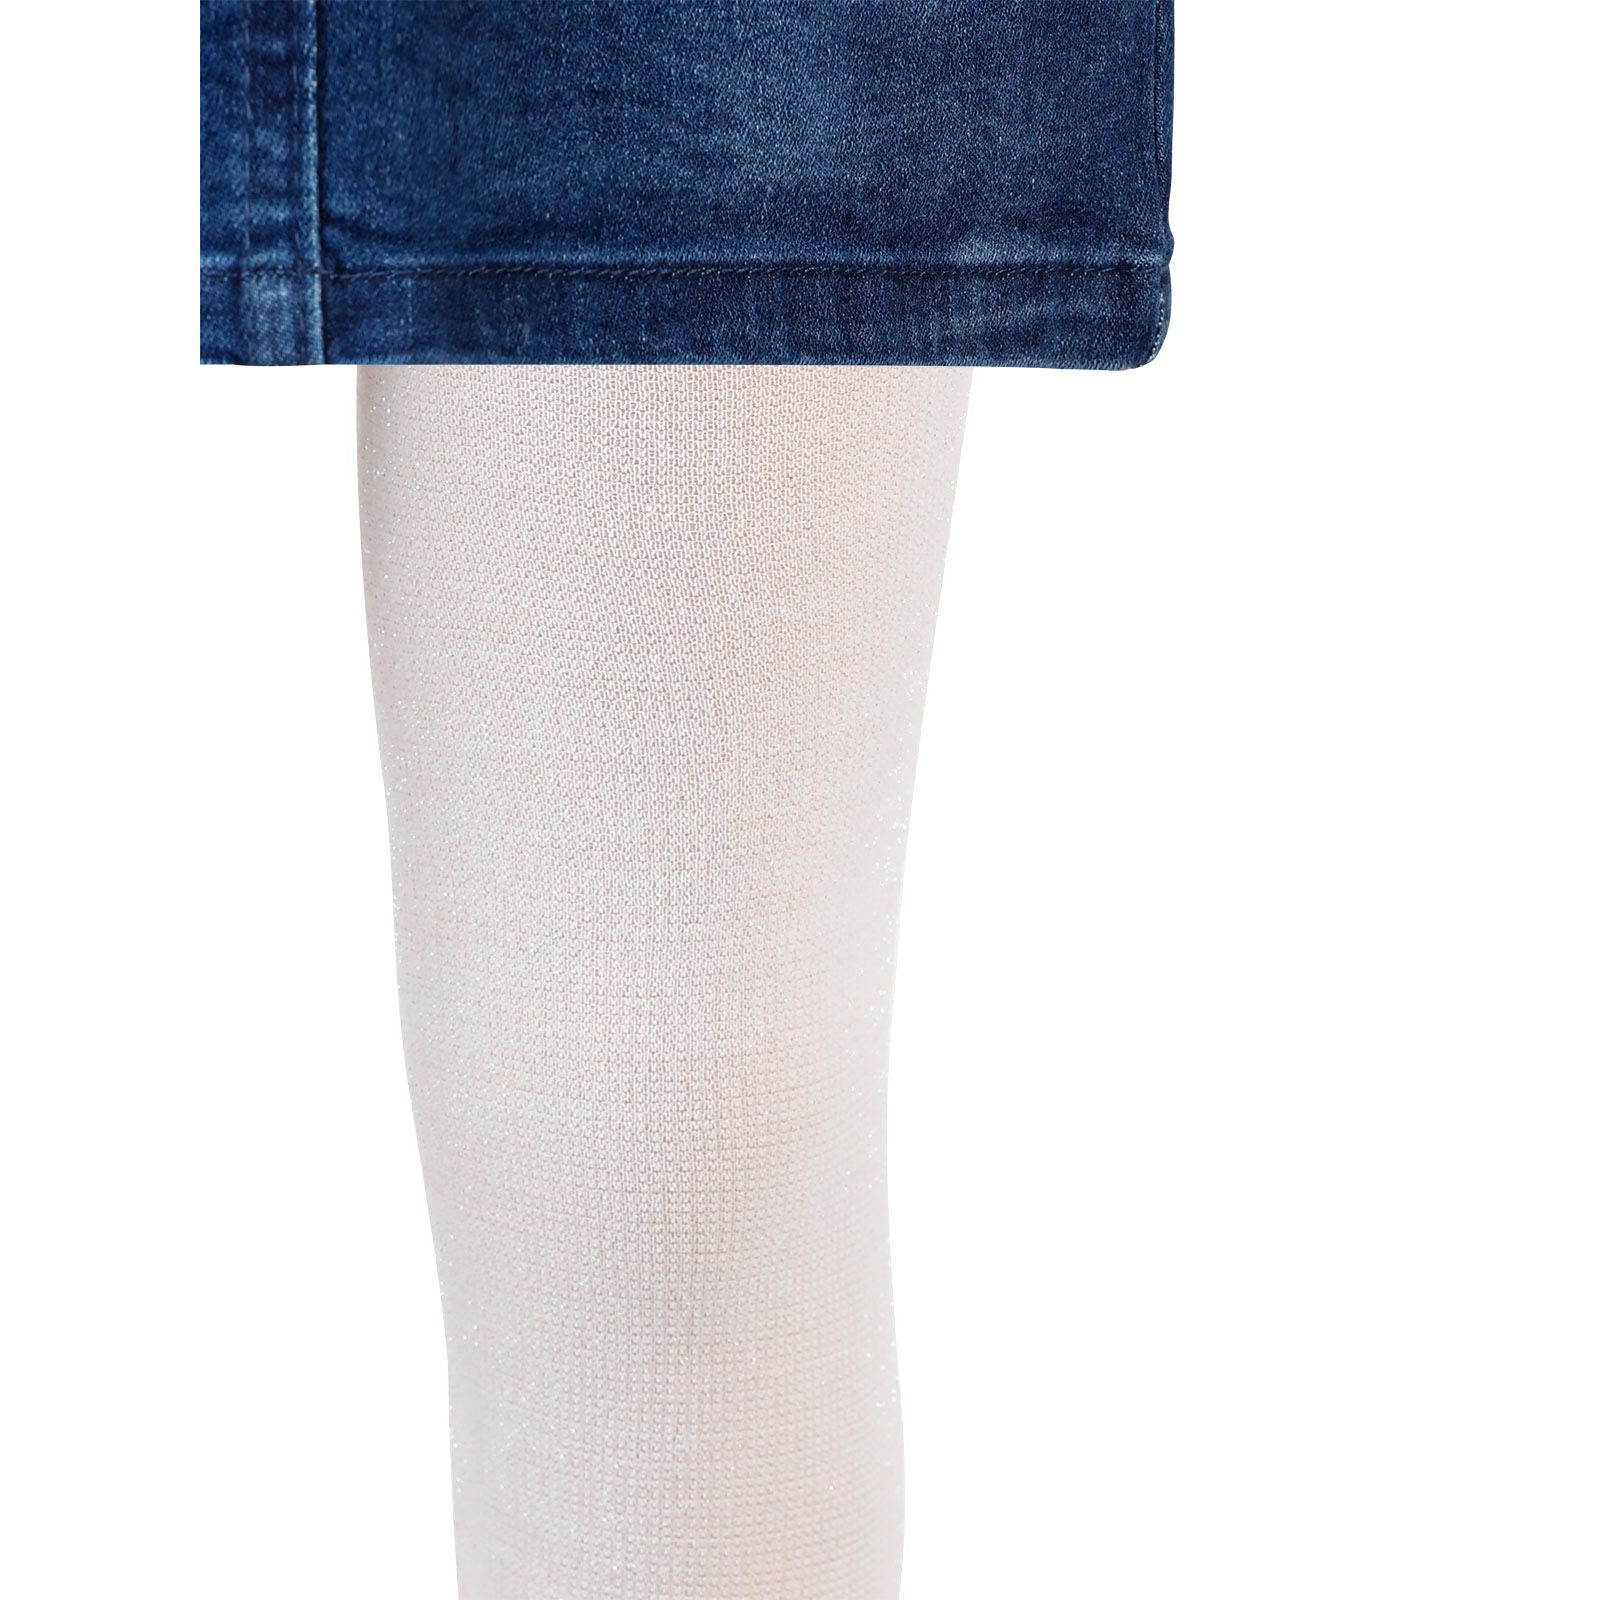 Artı Kız Çocuk Taçlı Külotlu Çorap 1-9 Yaş Beyaz